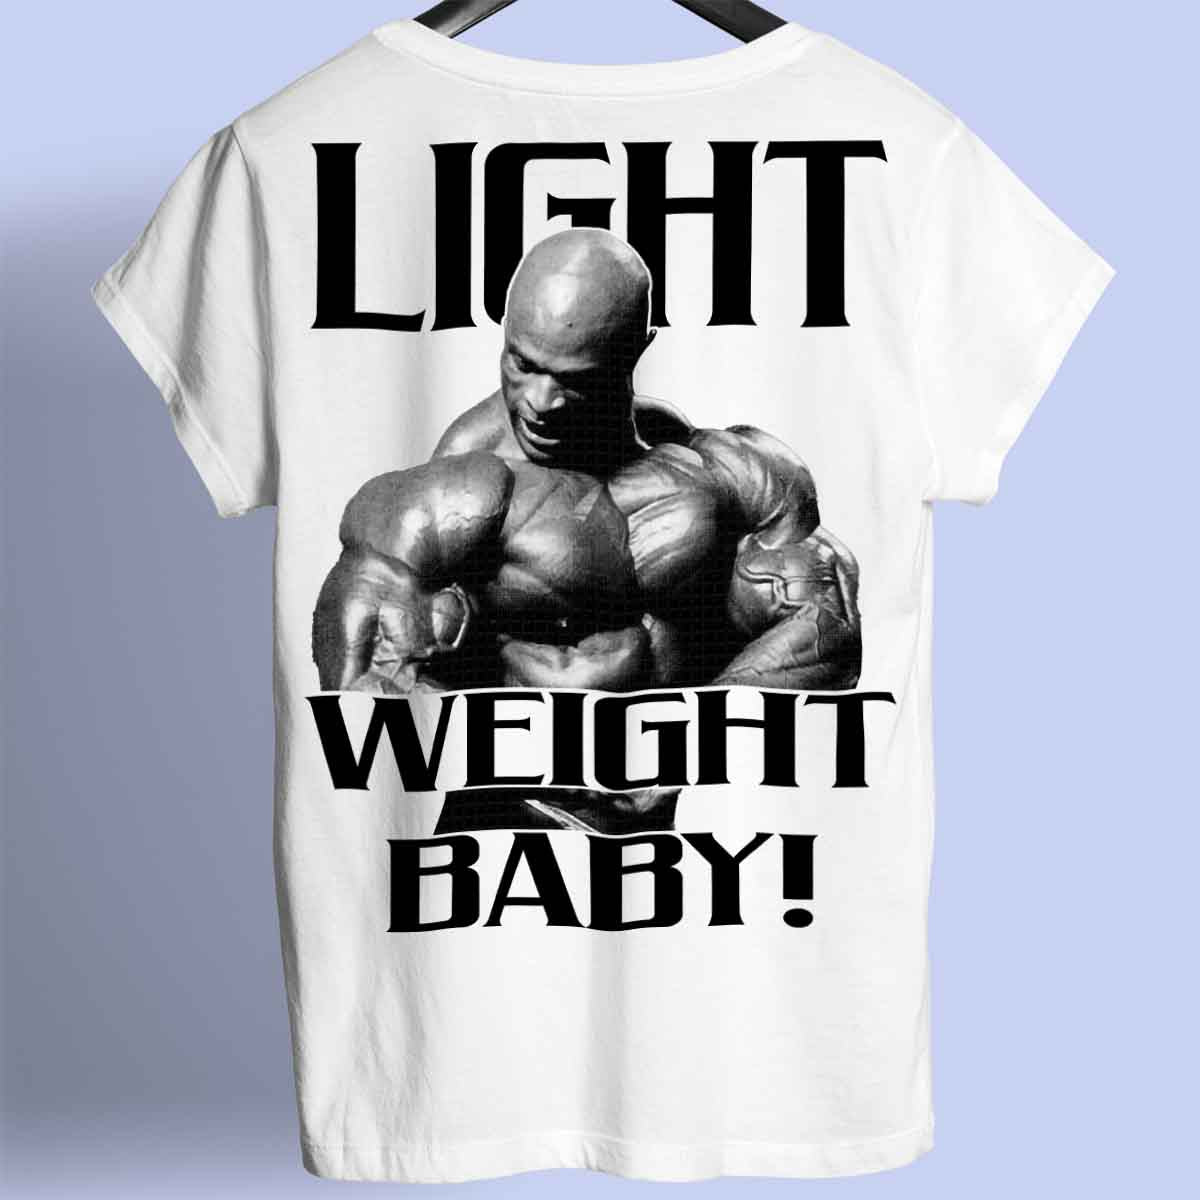 LIGHT WEIGHT BABY T-shirt